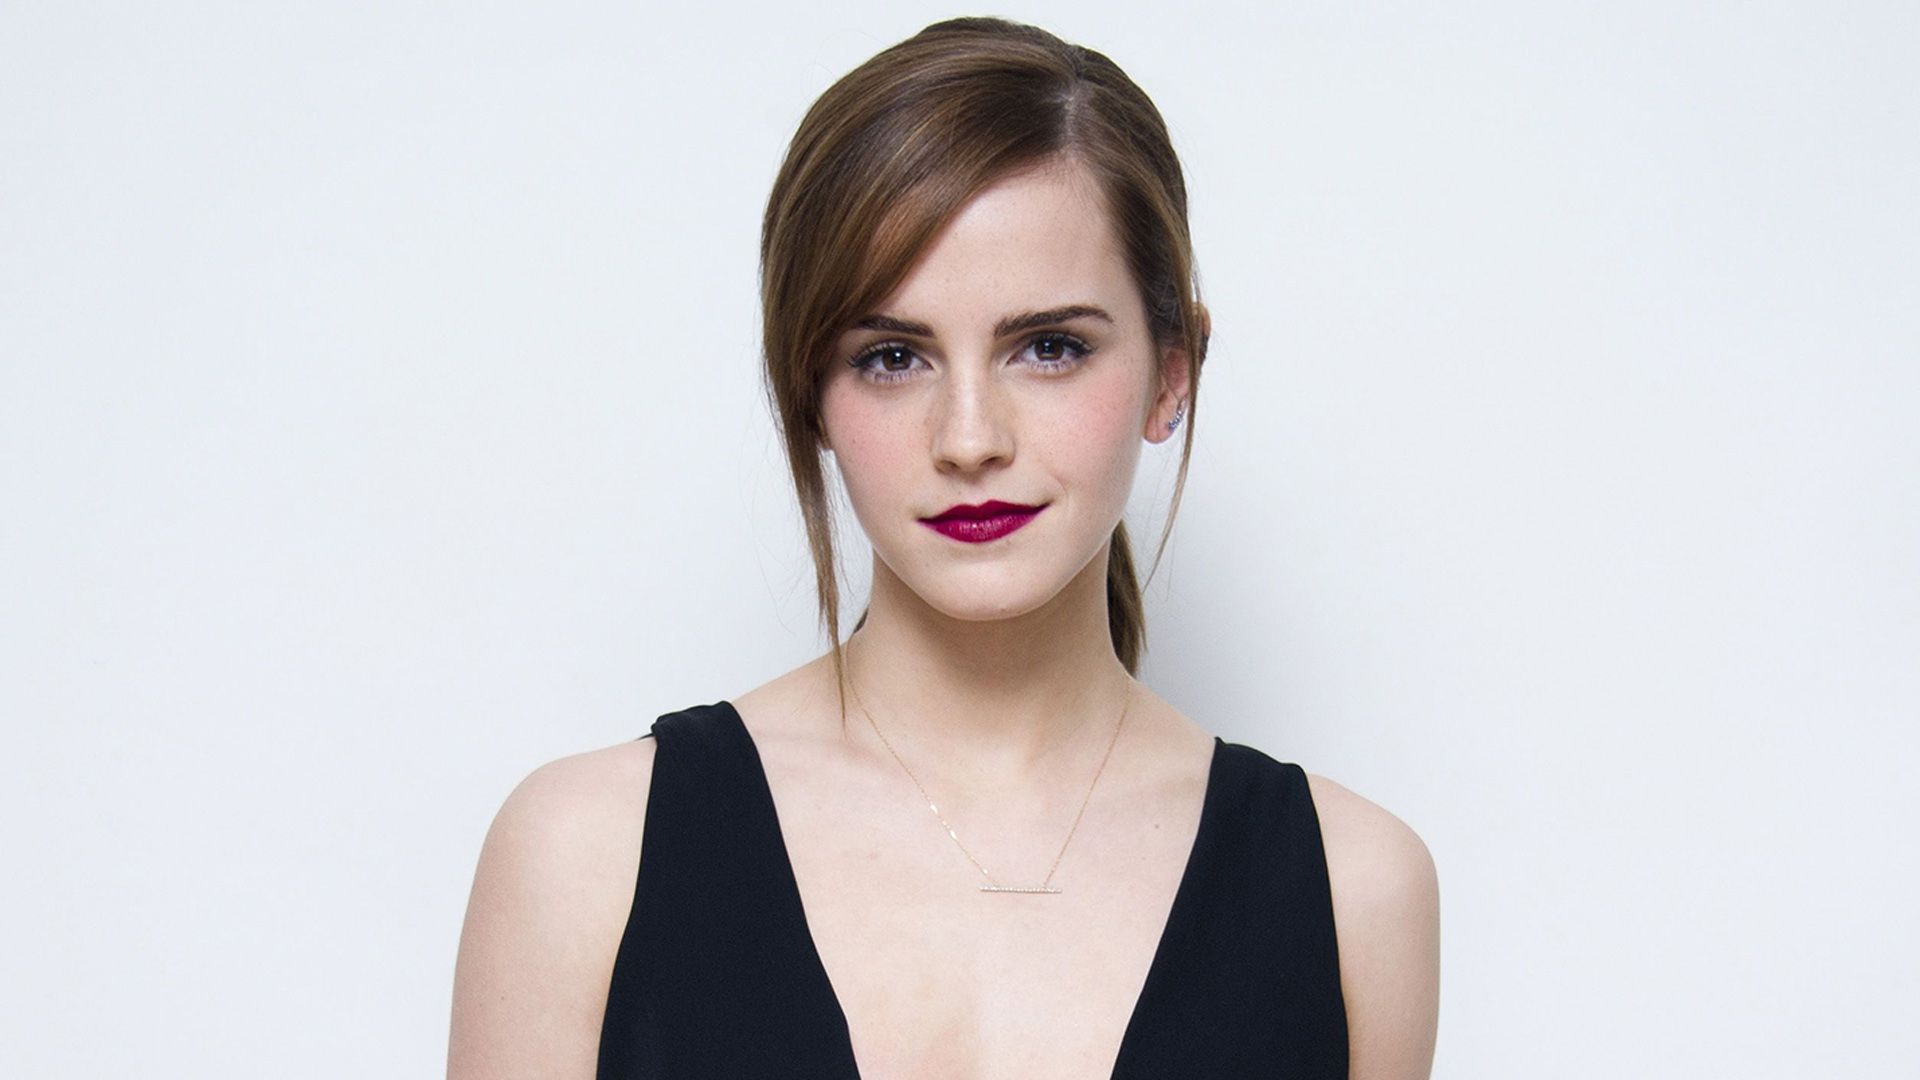 Fondos de pantalla de Emma Watson - Los mejores fondos gratuitos de Emma Watson